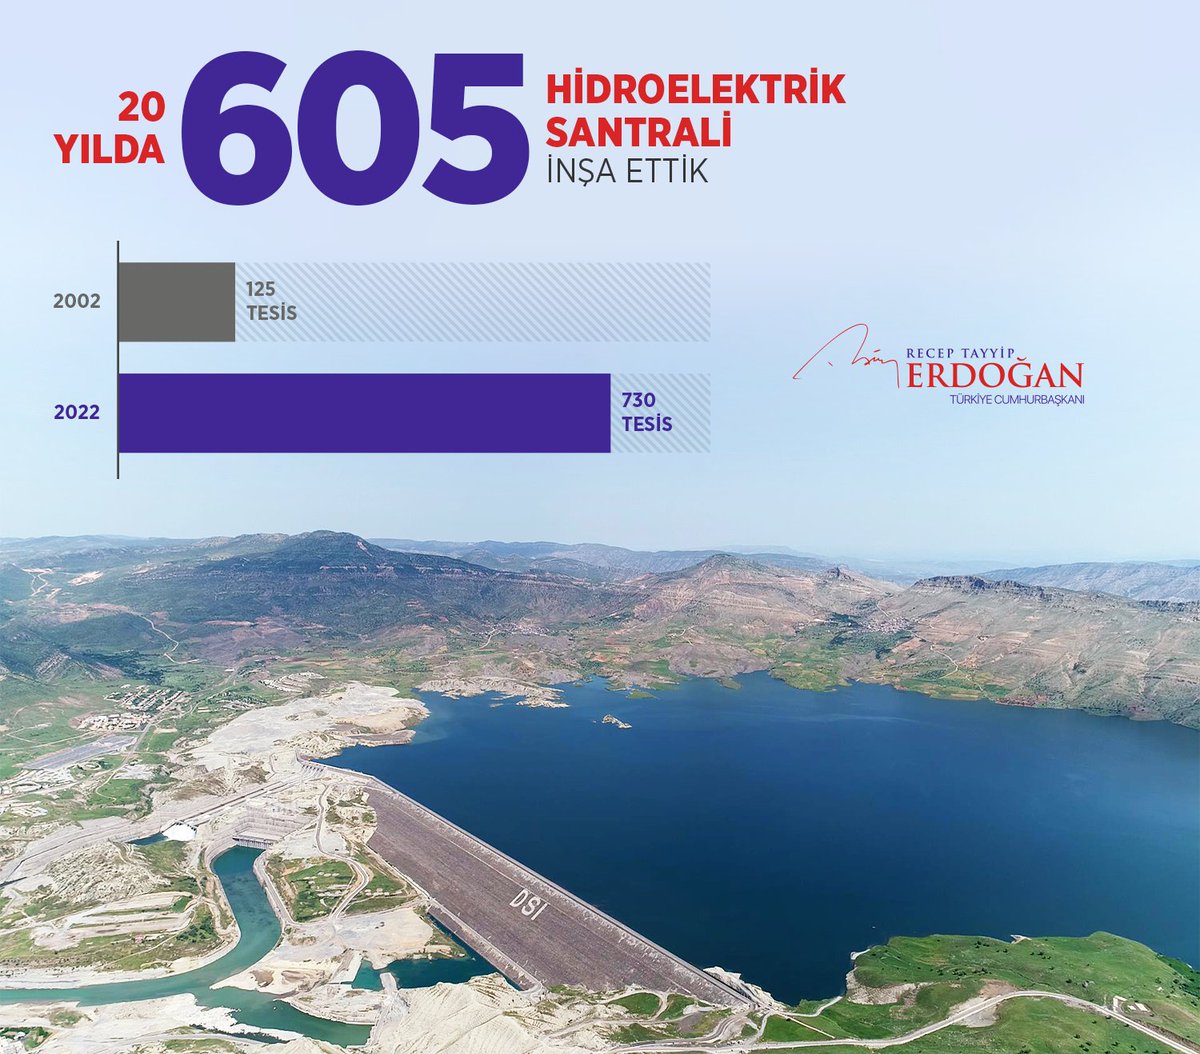 Son 20 yılda ülkemize 605 yeni hidroelektrik santrali kazandırmış ve toplam rakamı 730’a çıkarmış olmakla gurur duyuyoruz. Bu rakam, biz göreve geldiğimizde sadece 125’ti…